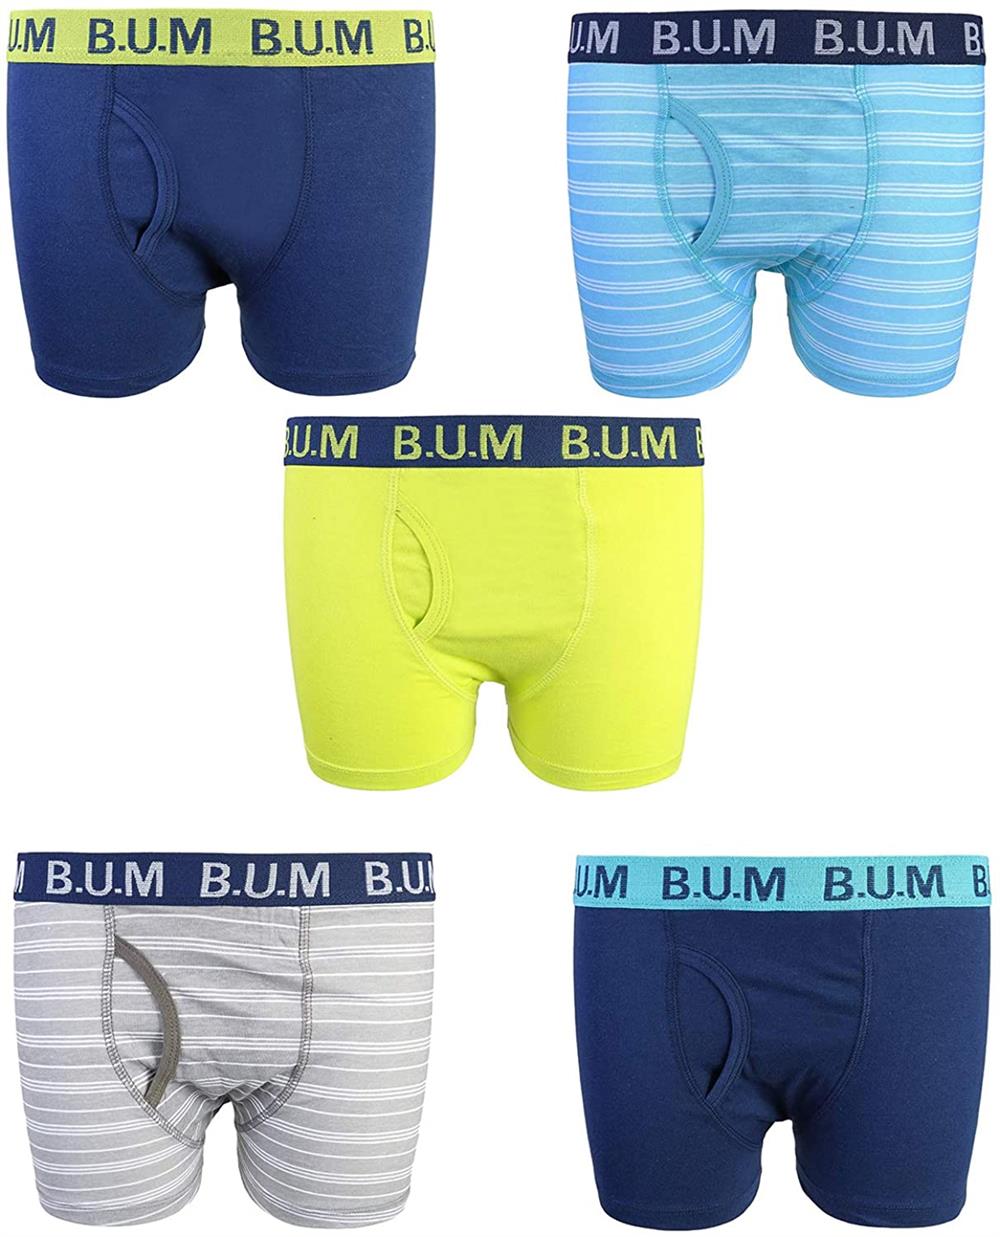 B.U.M. Equipment Boys Underwear - Cotton Boxer Briefs (5 Pack) – S&D Kids